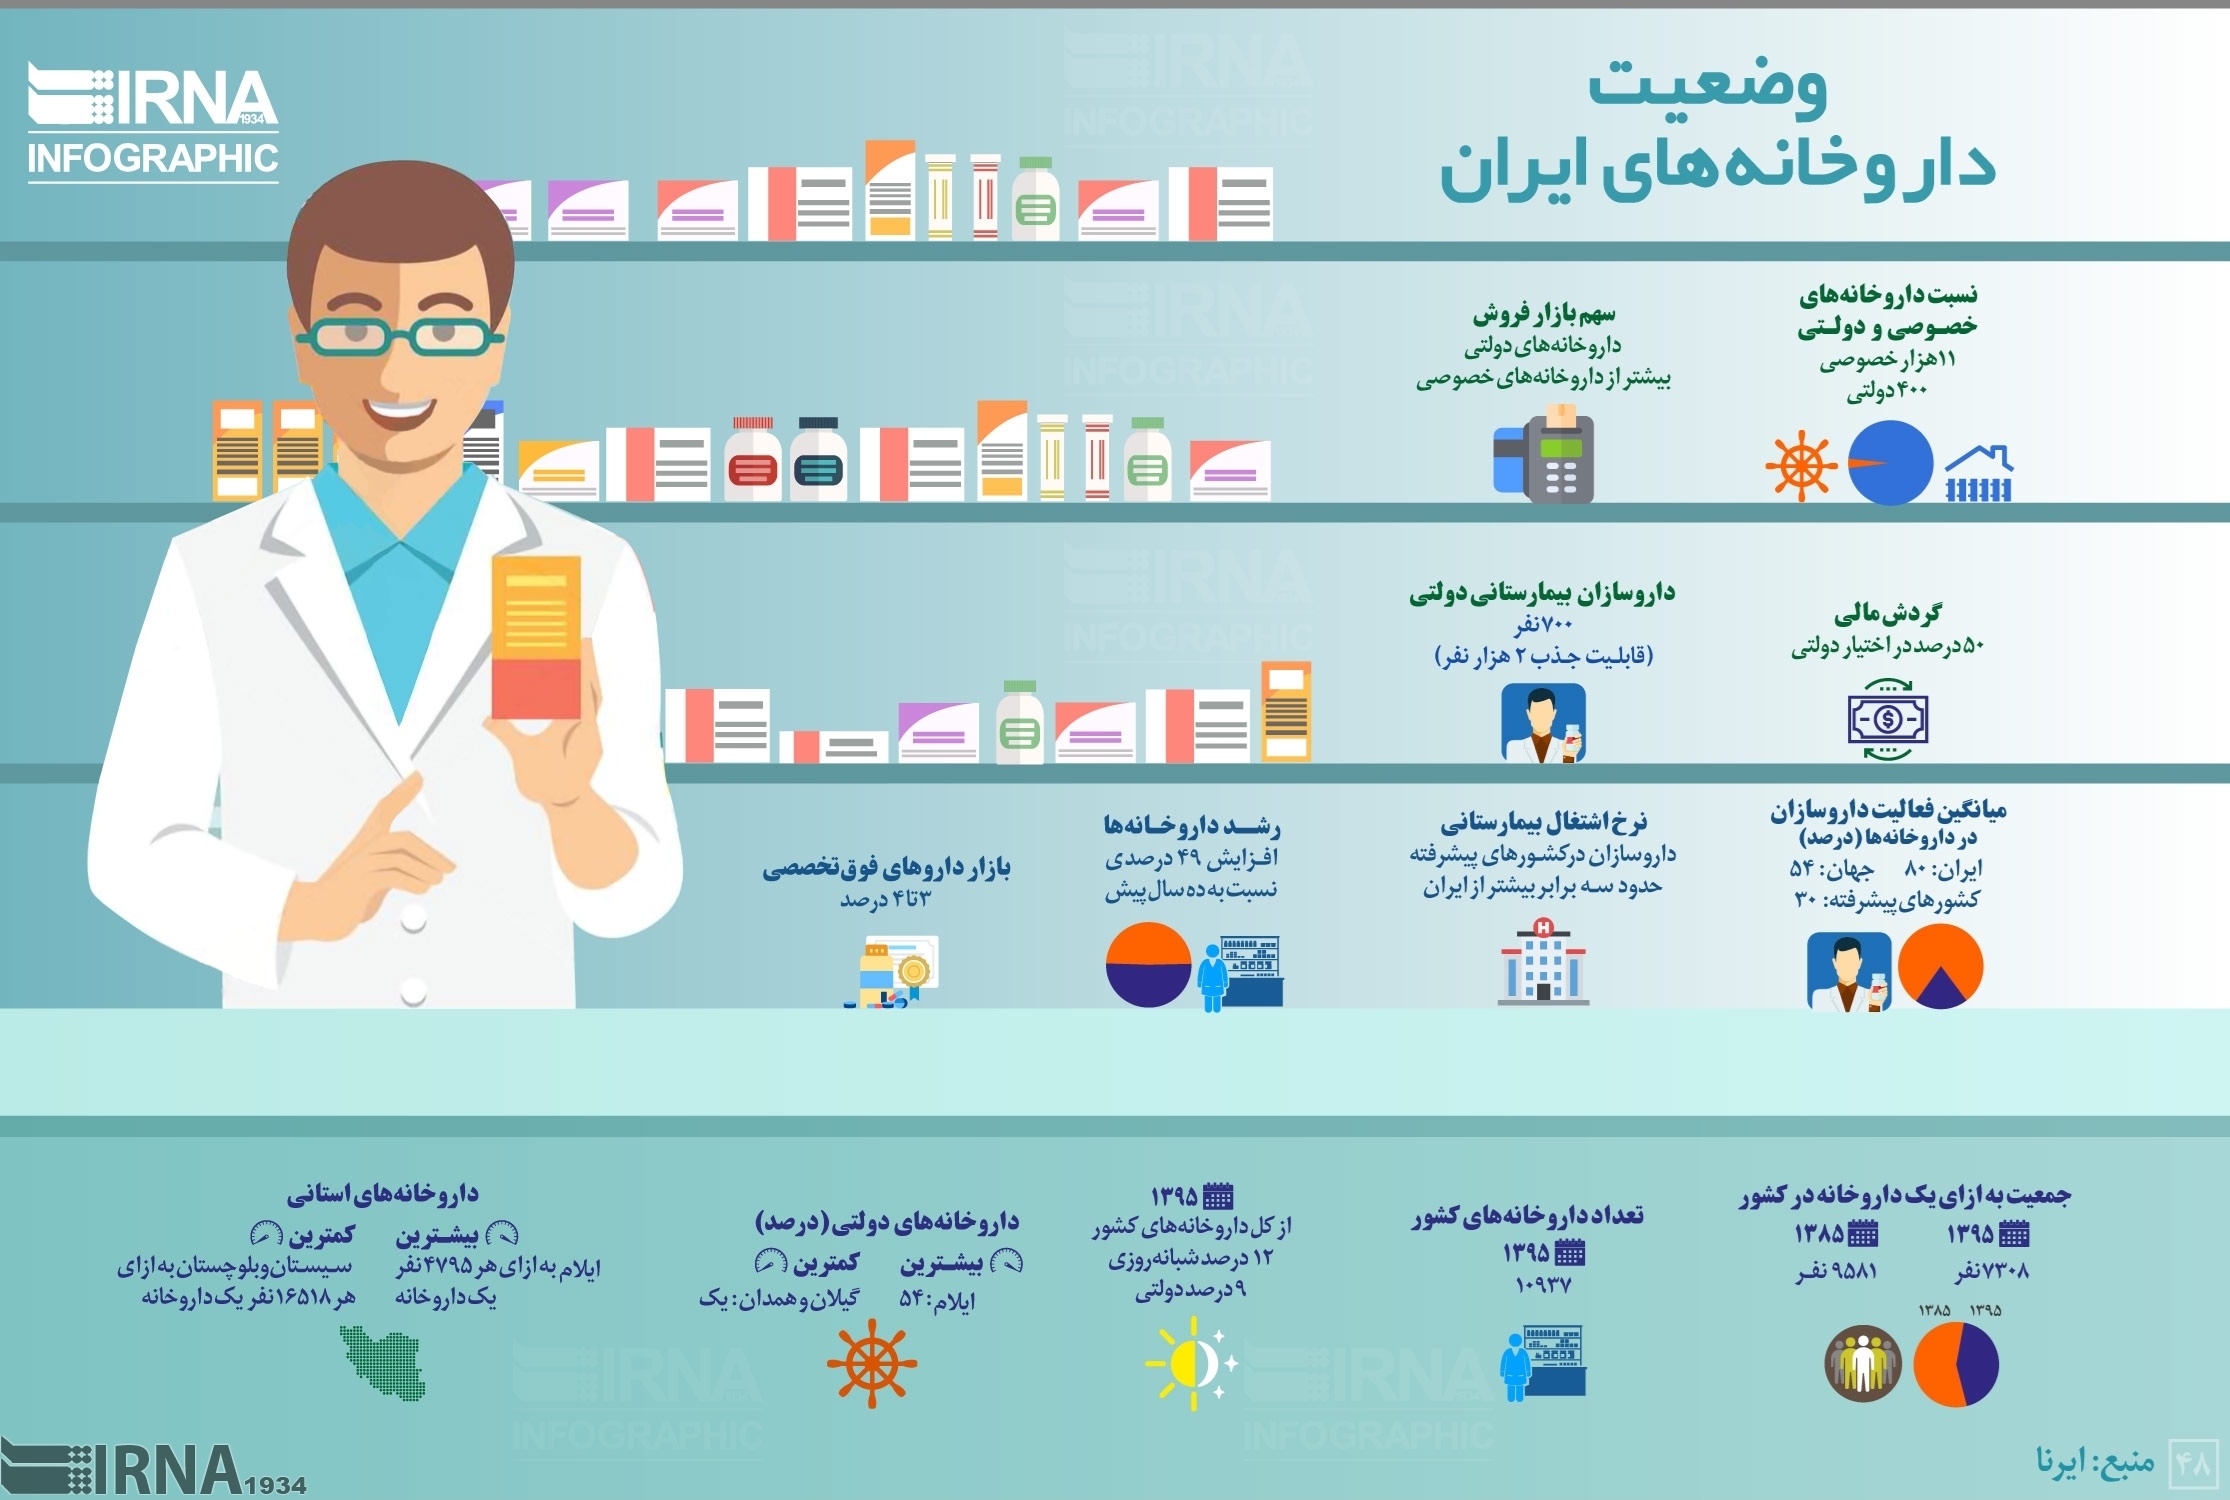 هر ۷۰۰۰ ایرانی، یک داروخانه